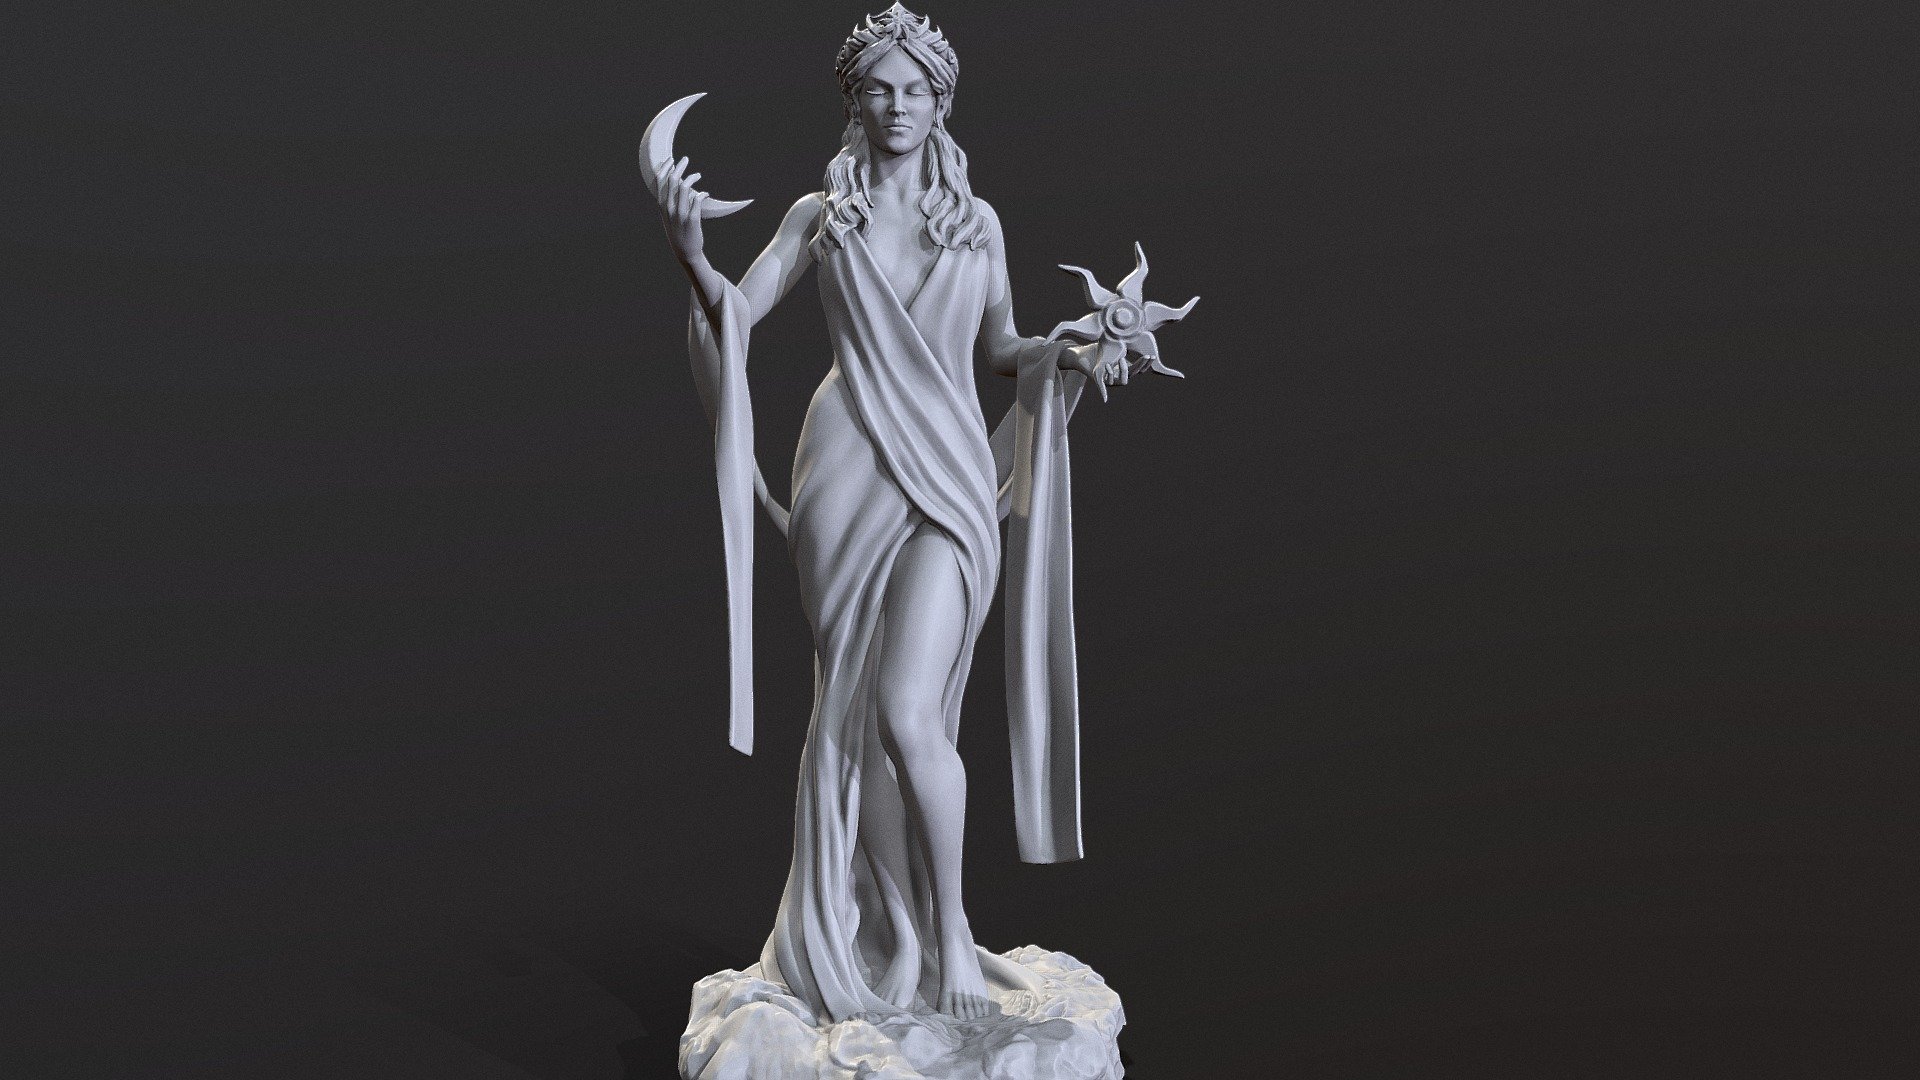 Azura printable figure.
200 mm - Azura - Buy Royalty Free 3D model by Mandrake (@mandrake_3d) 3d model